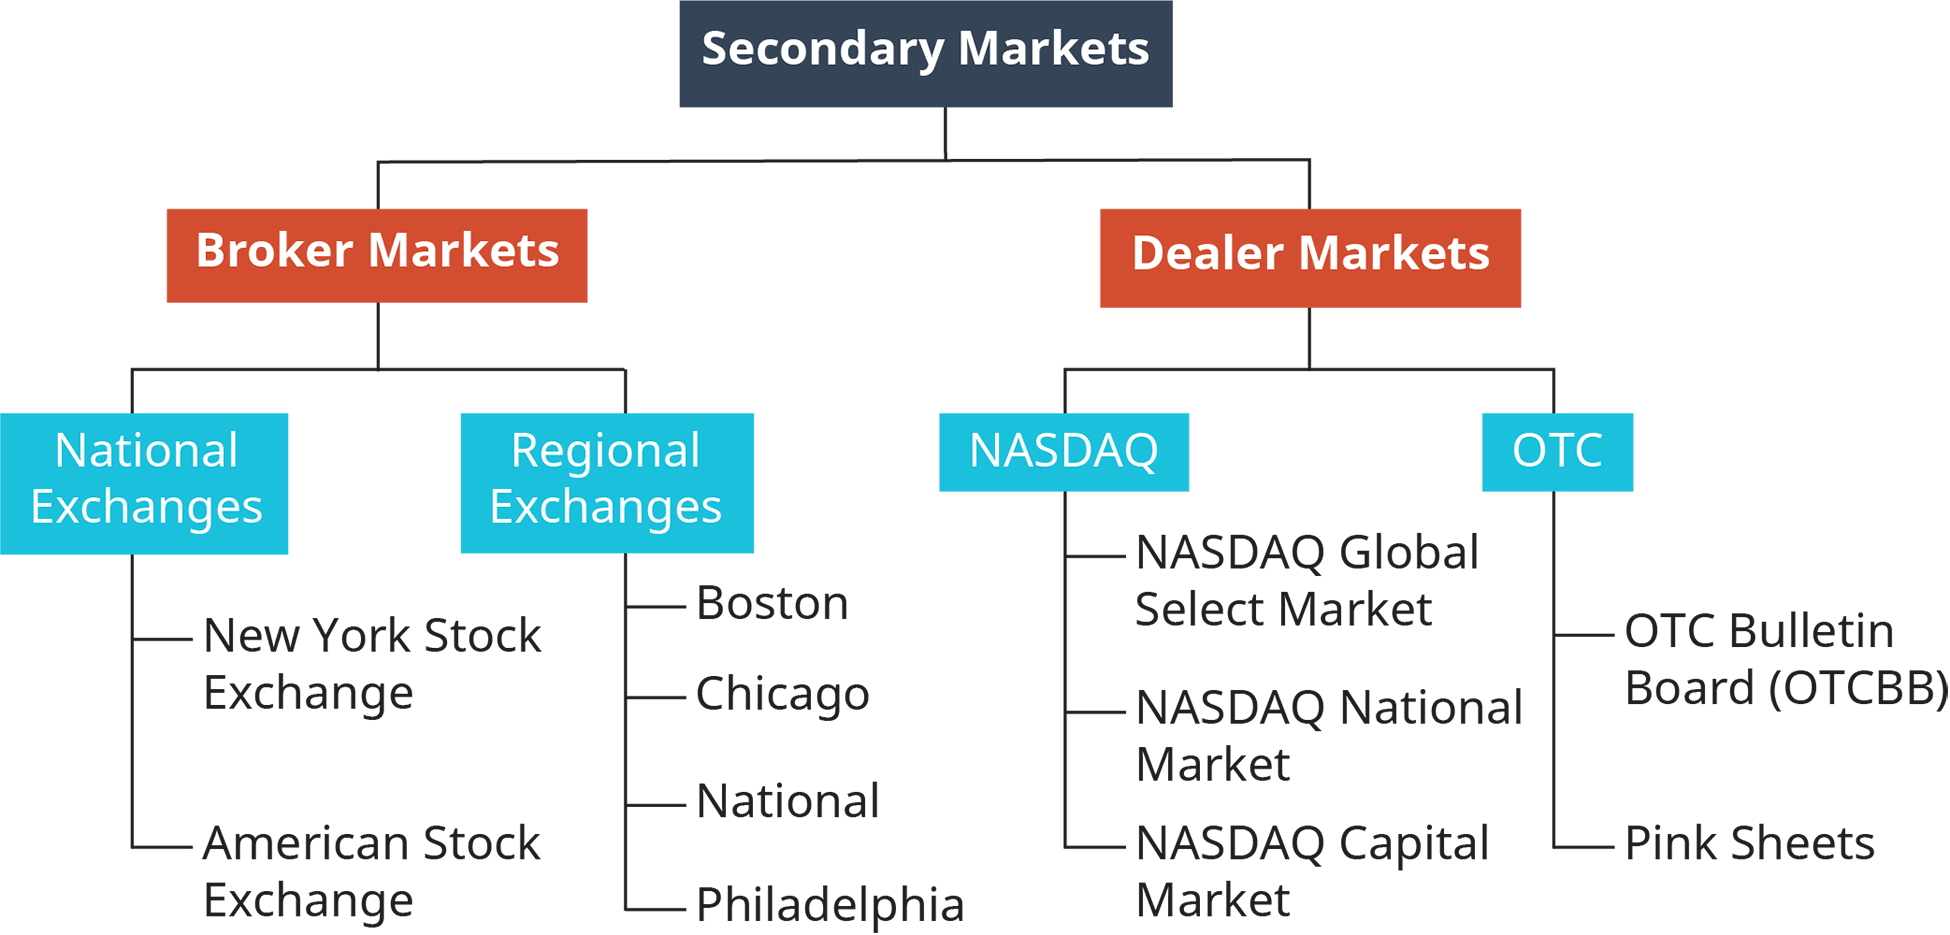 Les marchés secondaires sont divisés en deux sections, les marchés des courtiers et les marchés des courtiers. Le marché des courtiers est divisé en 2 sections, les bourses nationales et les bourses régionales. Les bourses nationales comprennent la Bourse de New York et la bourse américaine. Les échanges régionaux incluent Boston, Chicago, National et Philadelphie. Les marchés des courtiers sont divisés en deux sections, le Nasdaq et l'O T C. Le Nasdaq comprend le Nasdaq Global Select Market, le Nasdaq National Market et le Nasdaq Capital Market. O T C comprend le babillard O T C, appelé O T C B B ; et des feuilles roses.